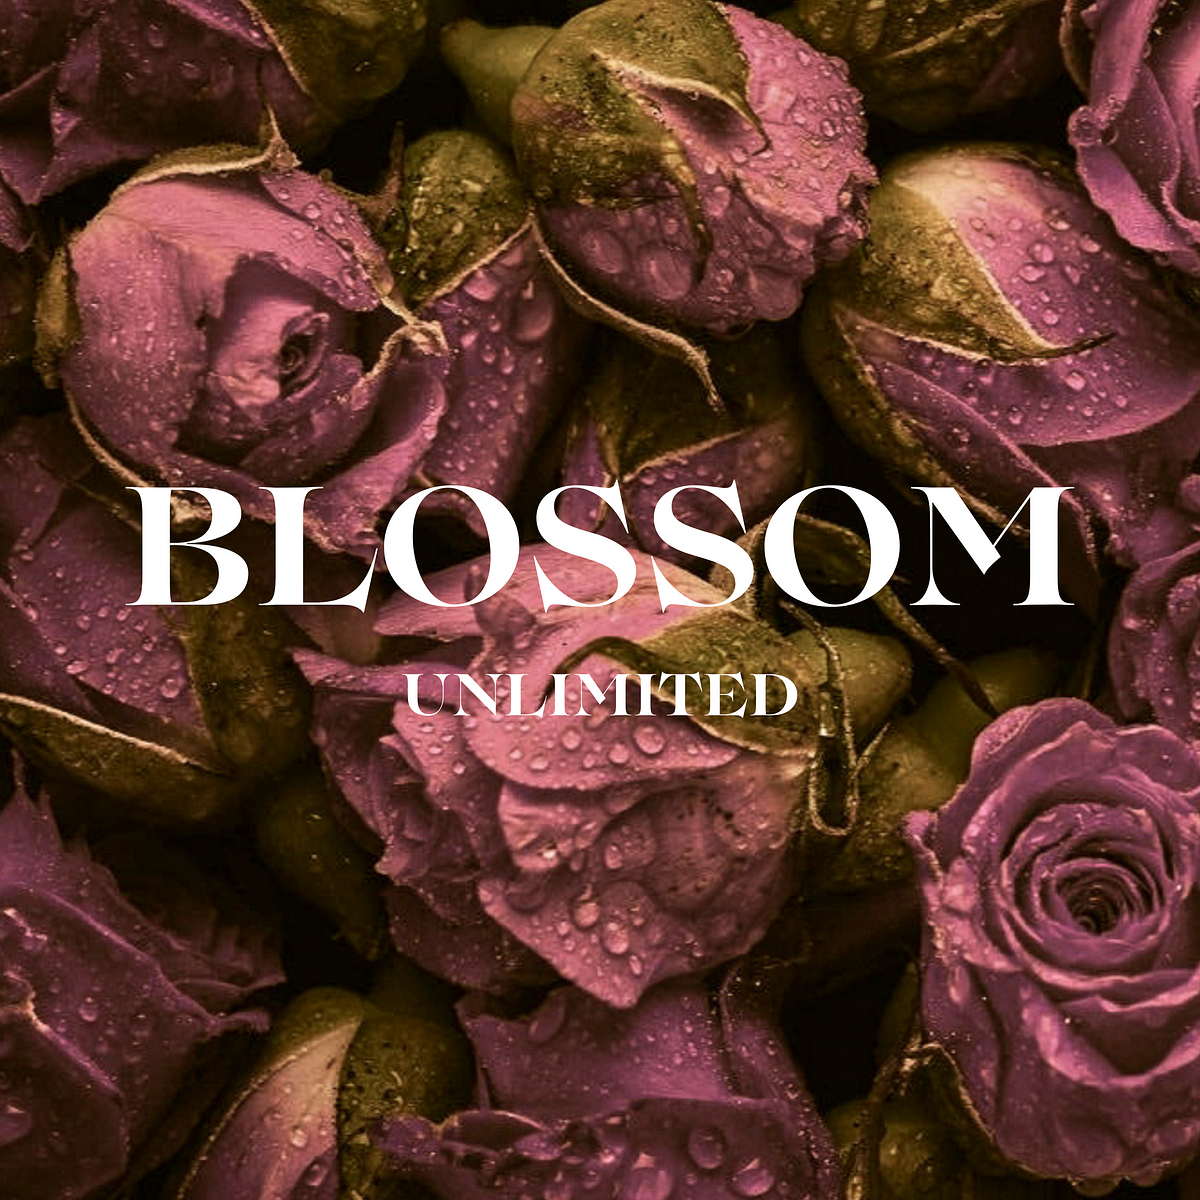 Blossom Unlimited – Medium